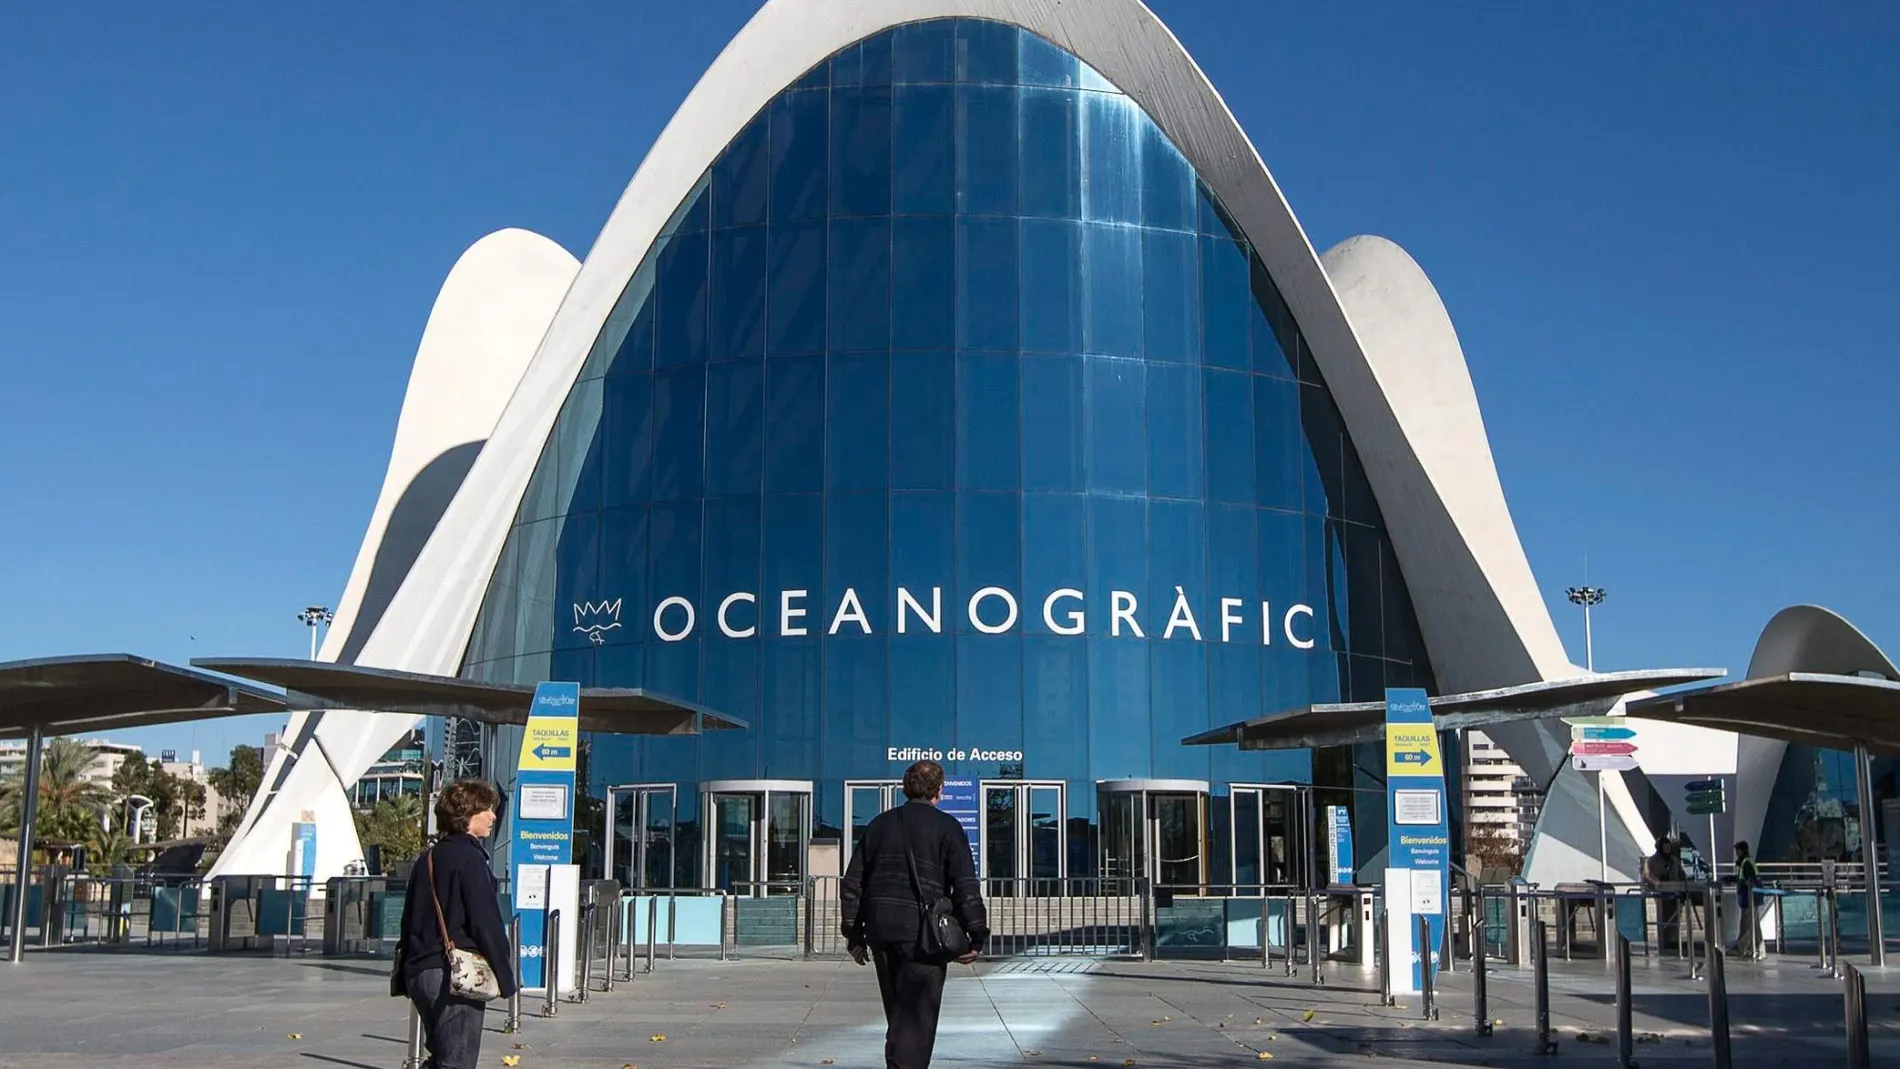 El 47 por ciento de los visitantes que registró el Oceanográfico a lo largo del último año eran extranjeros, principalmente italianos, franceses e ingleses